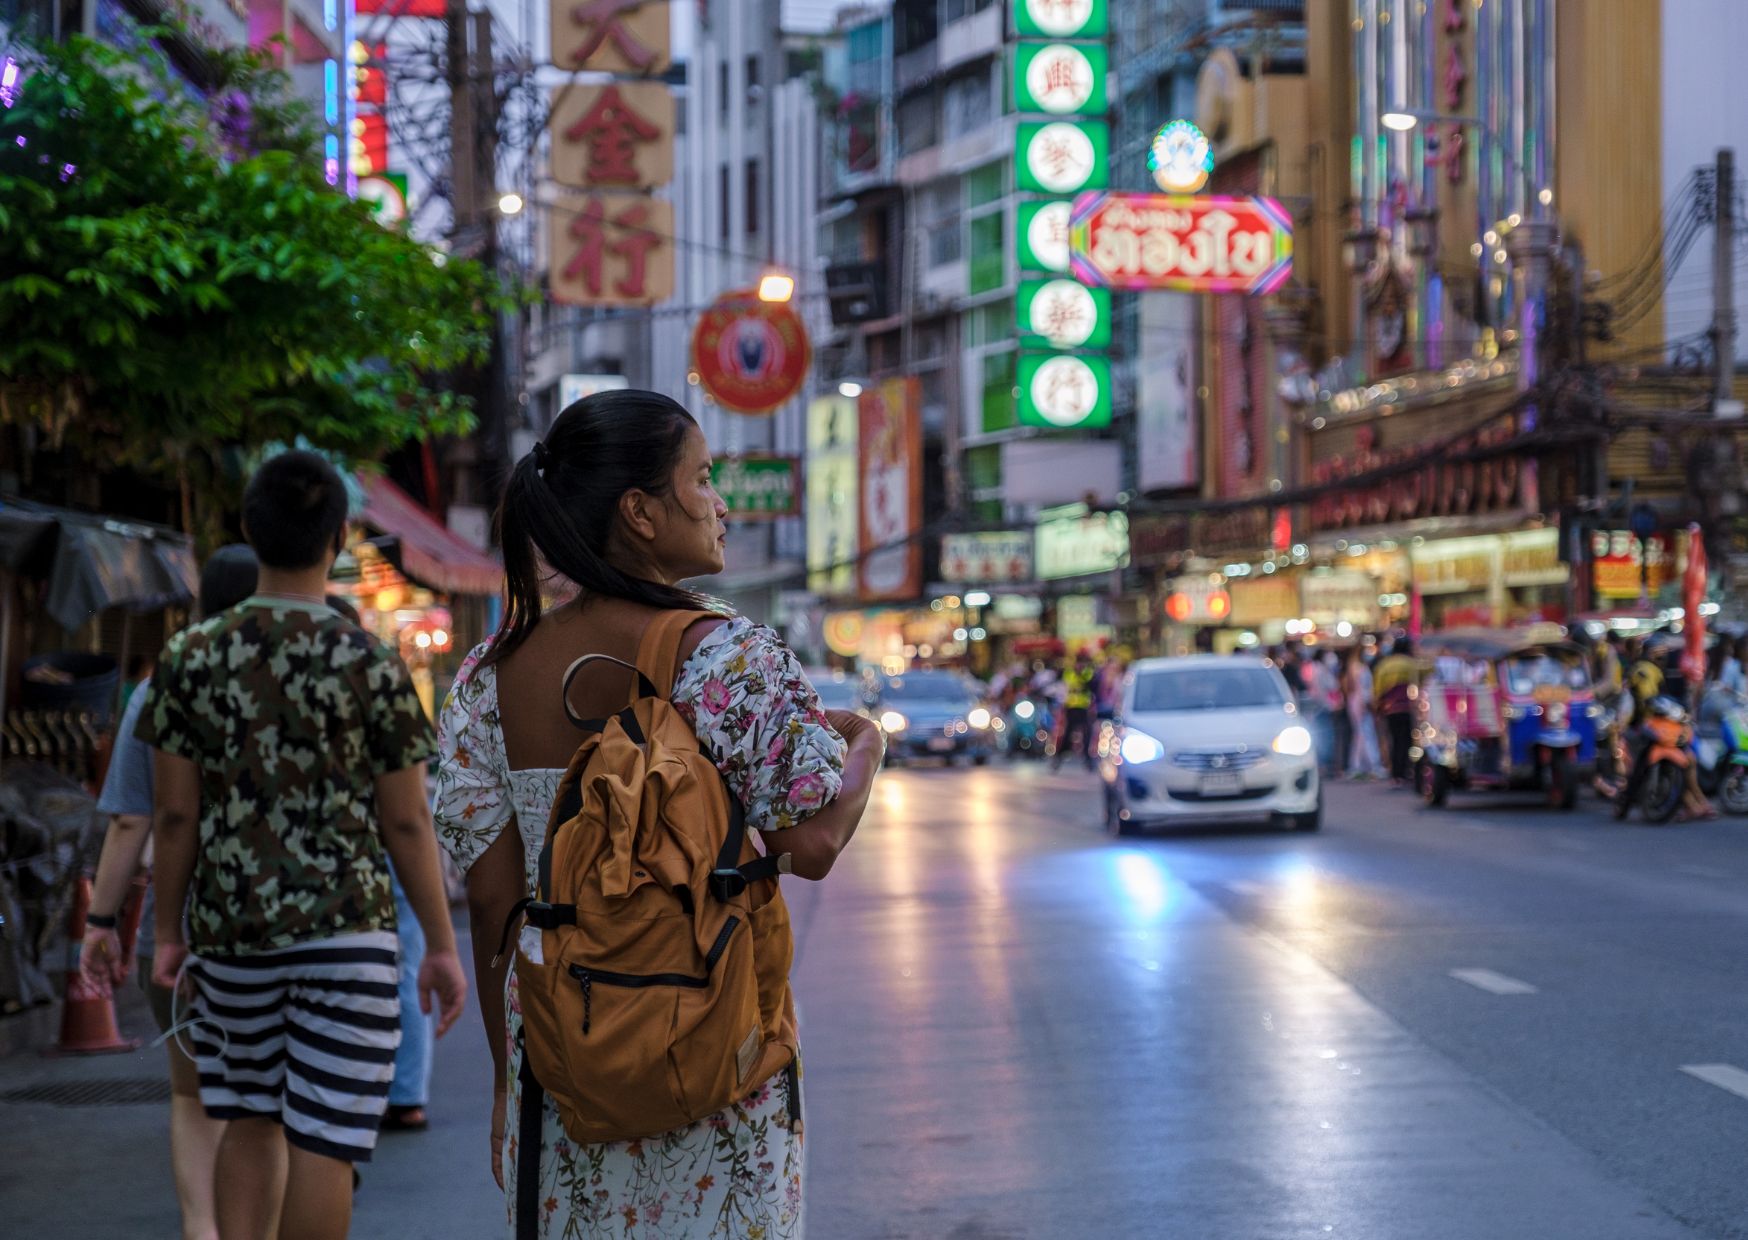 budget travel hacks for visiting China